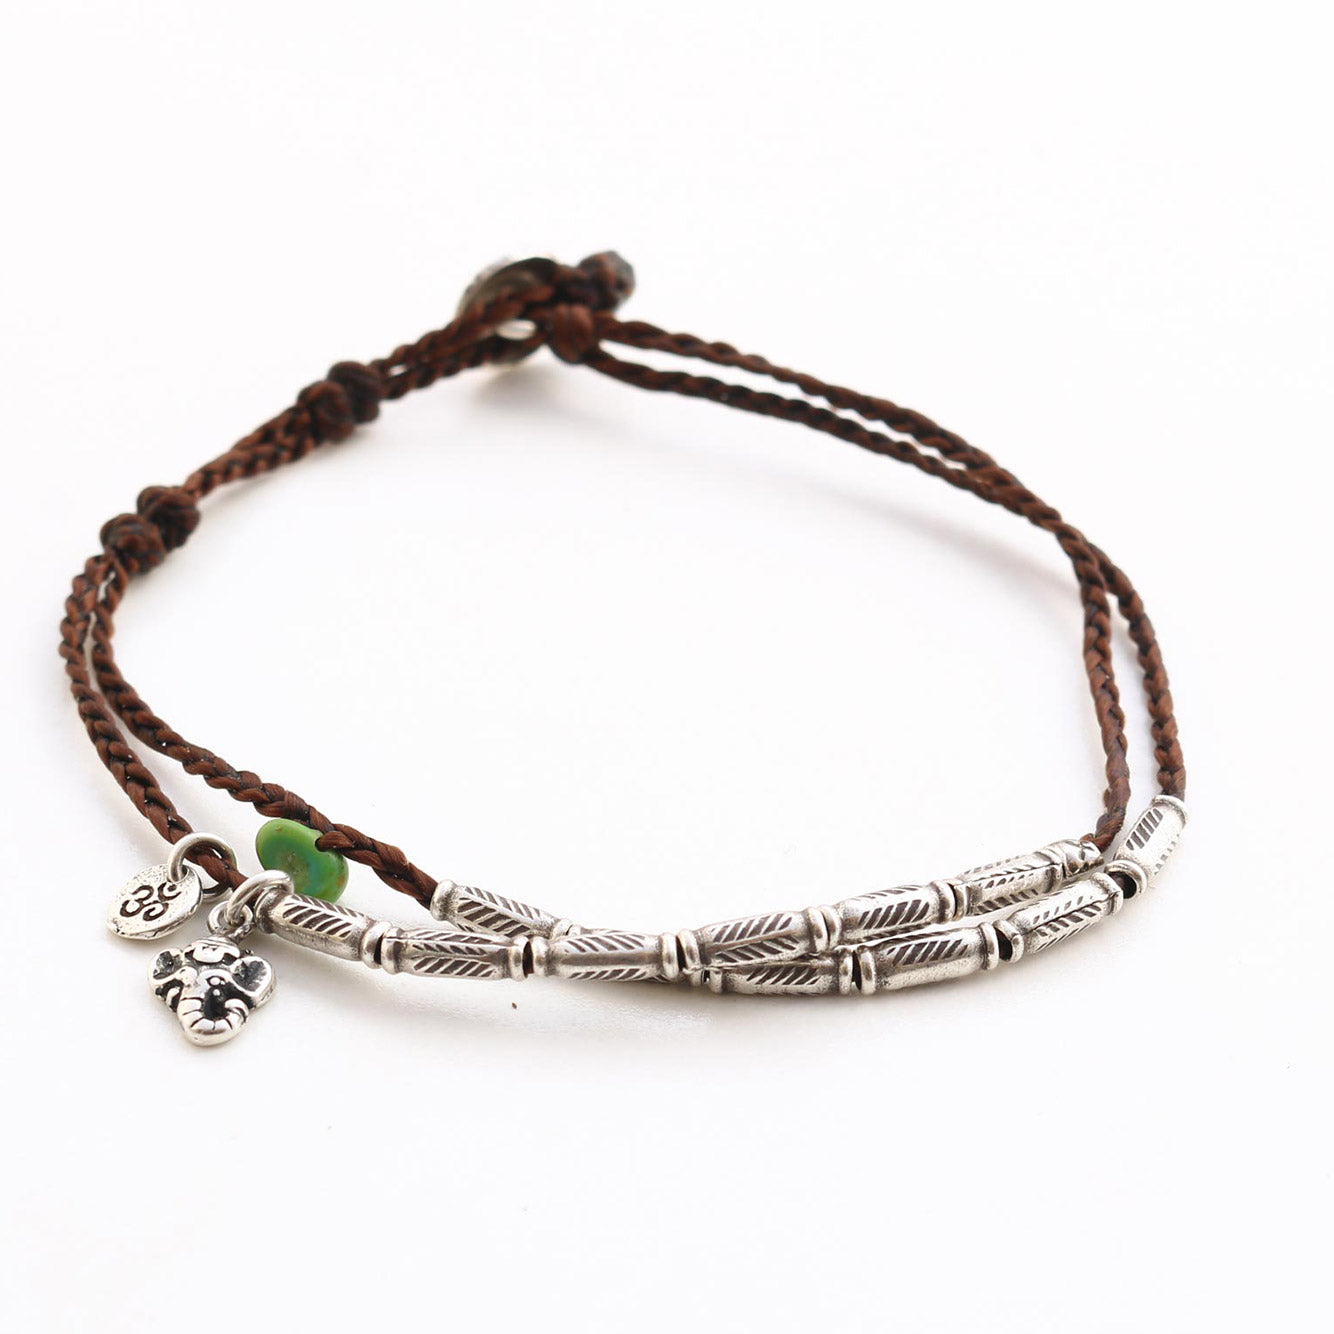 Handmade silver beads bracelet